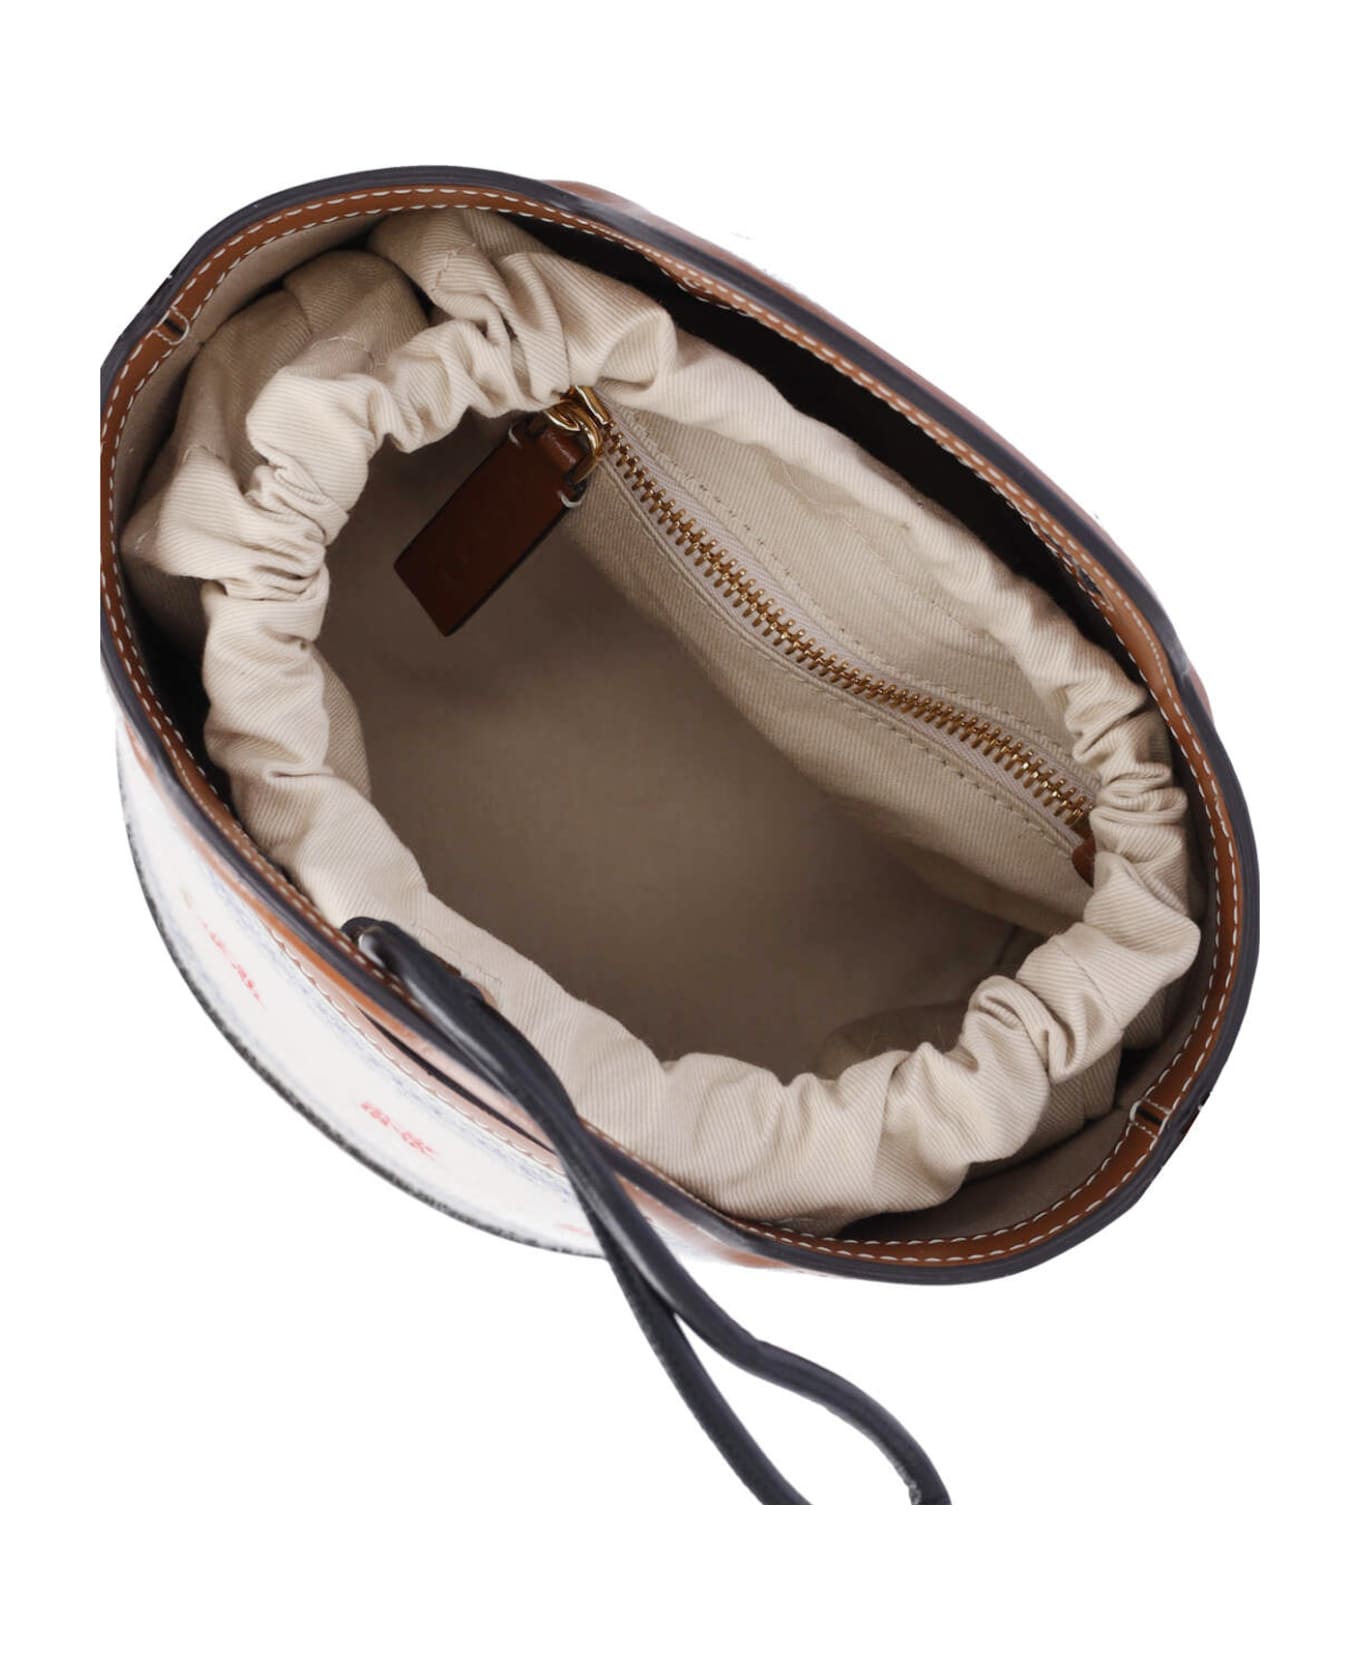 Marni Small Bucket Bag "tropicalia" - Crema